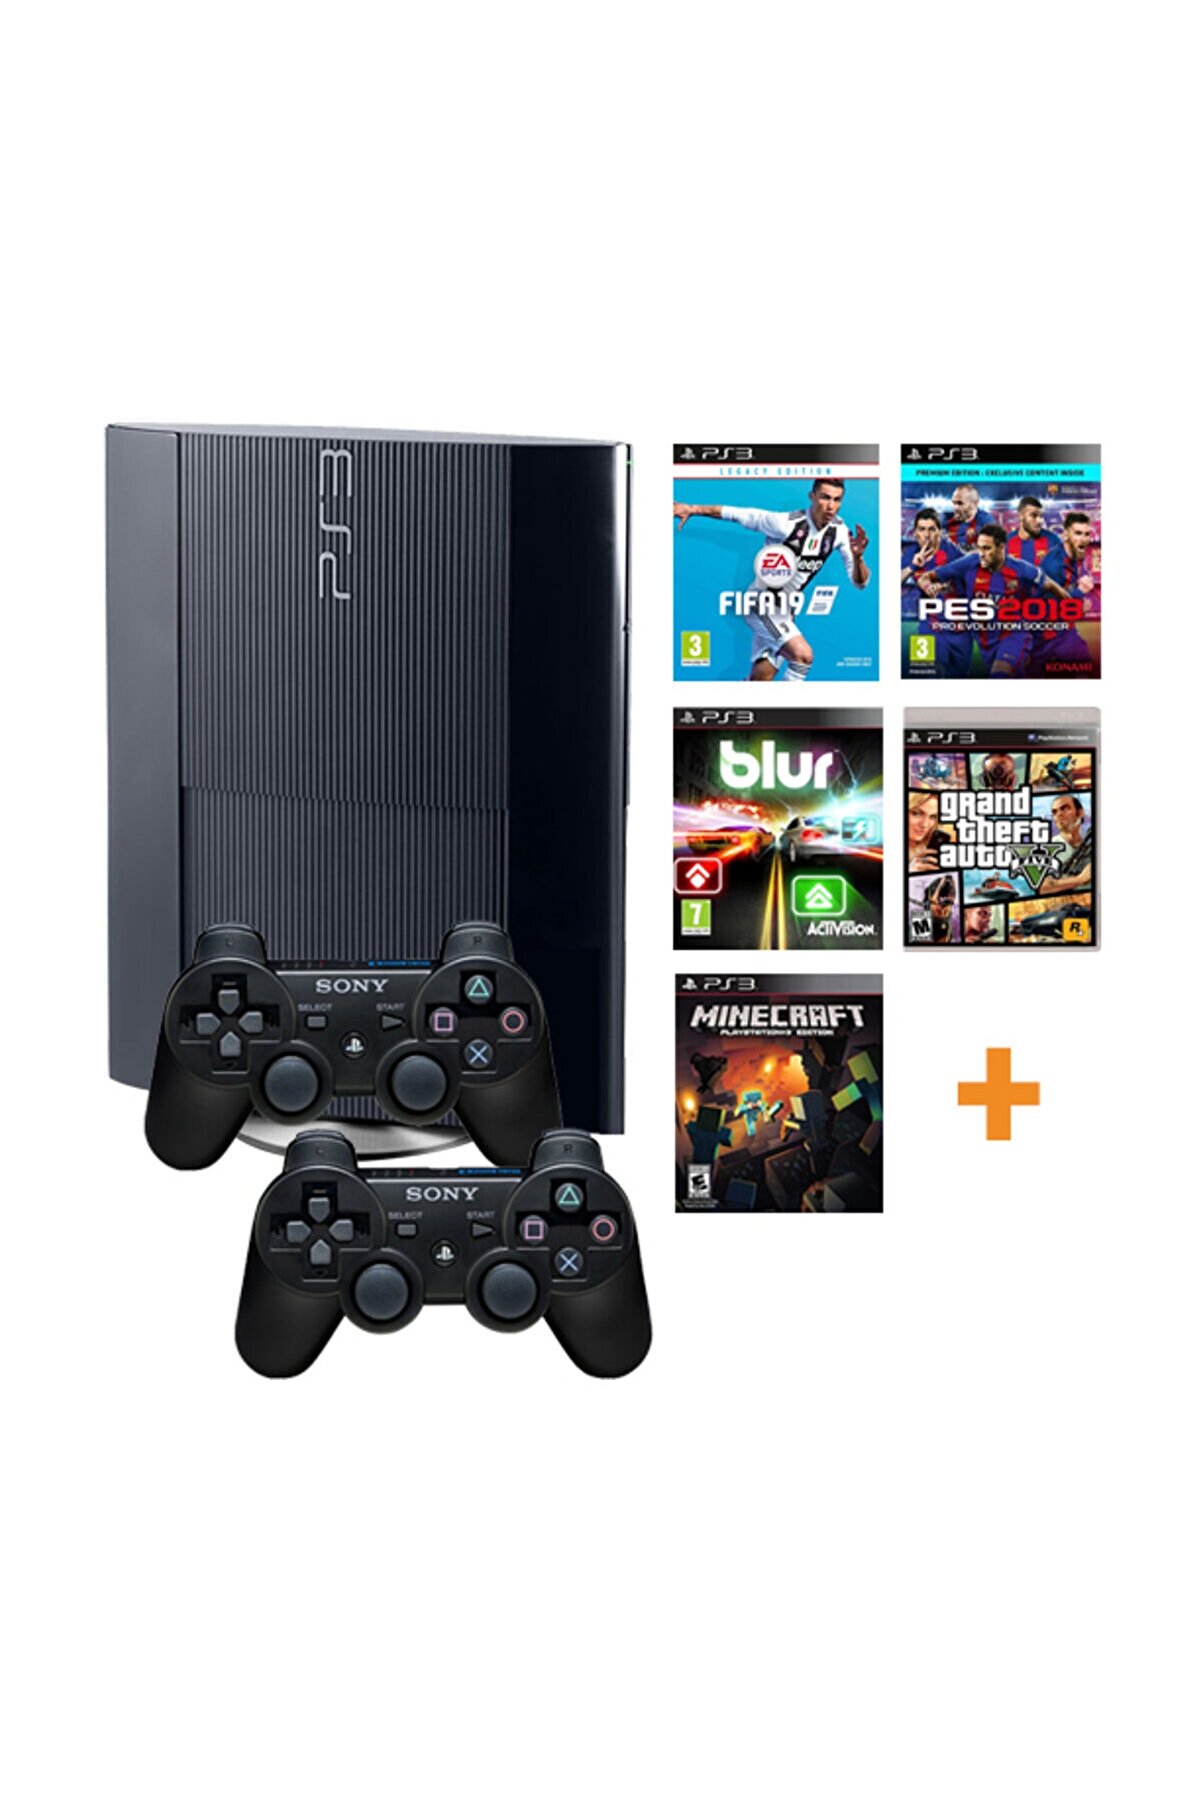 Sony Playstation 3 500gb Yenilenmiş Oyun Konsolu 37 Adet Digital Oyunlu